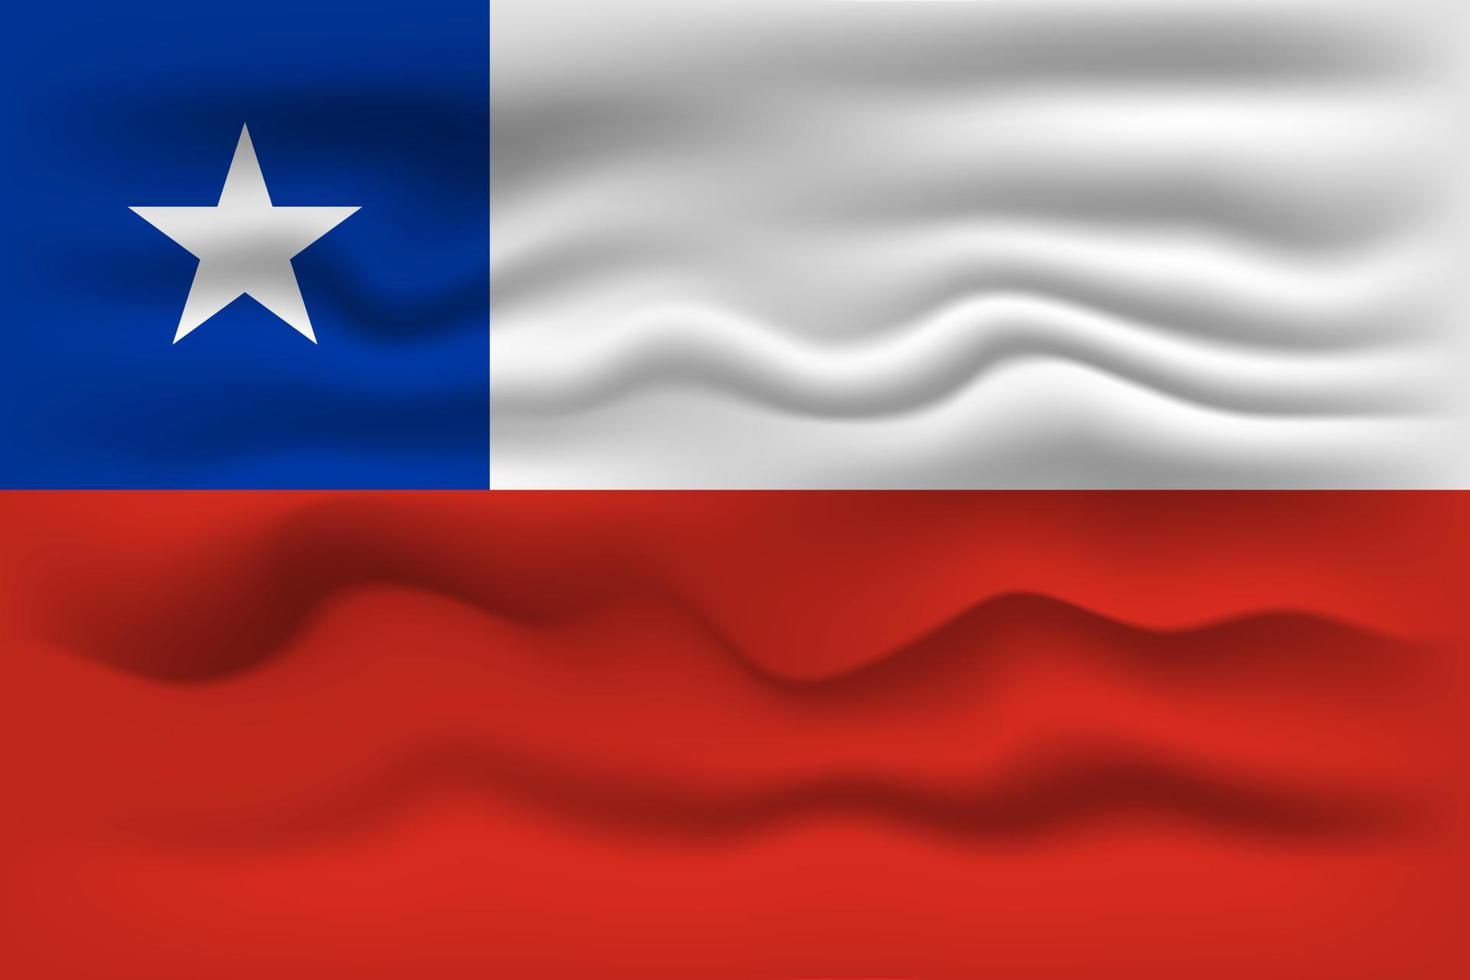 ondeando la bandera del país chile. ilustración vectorial vector